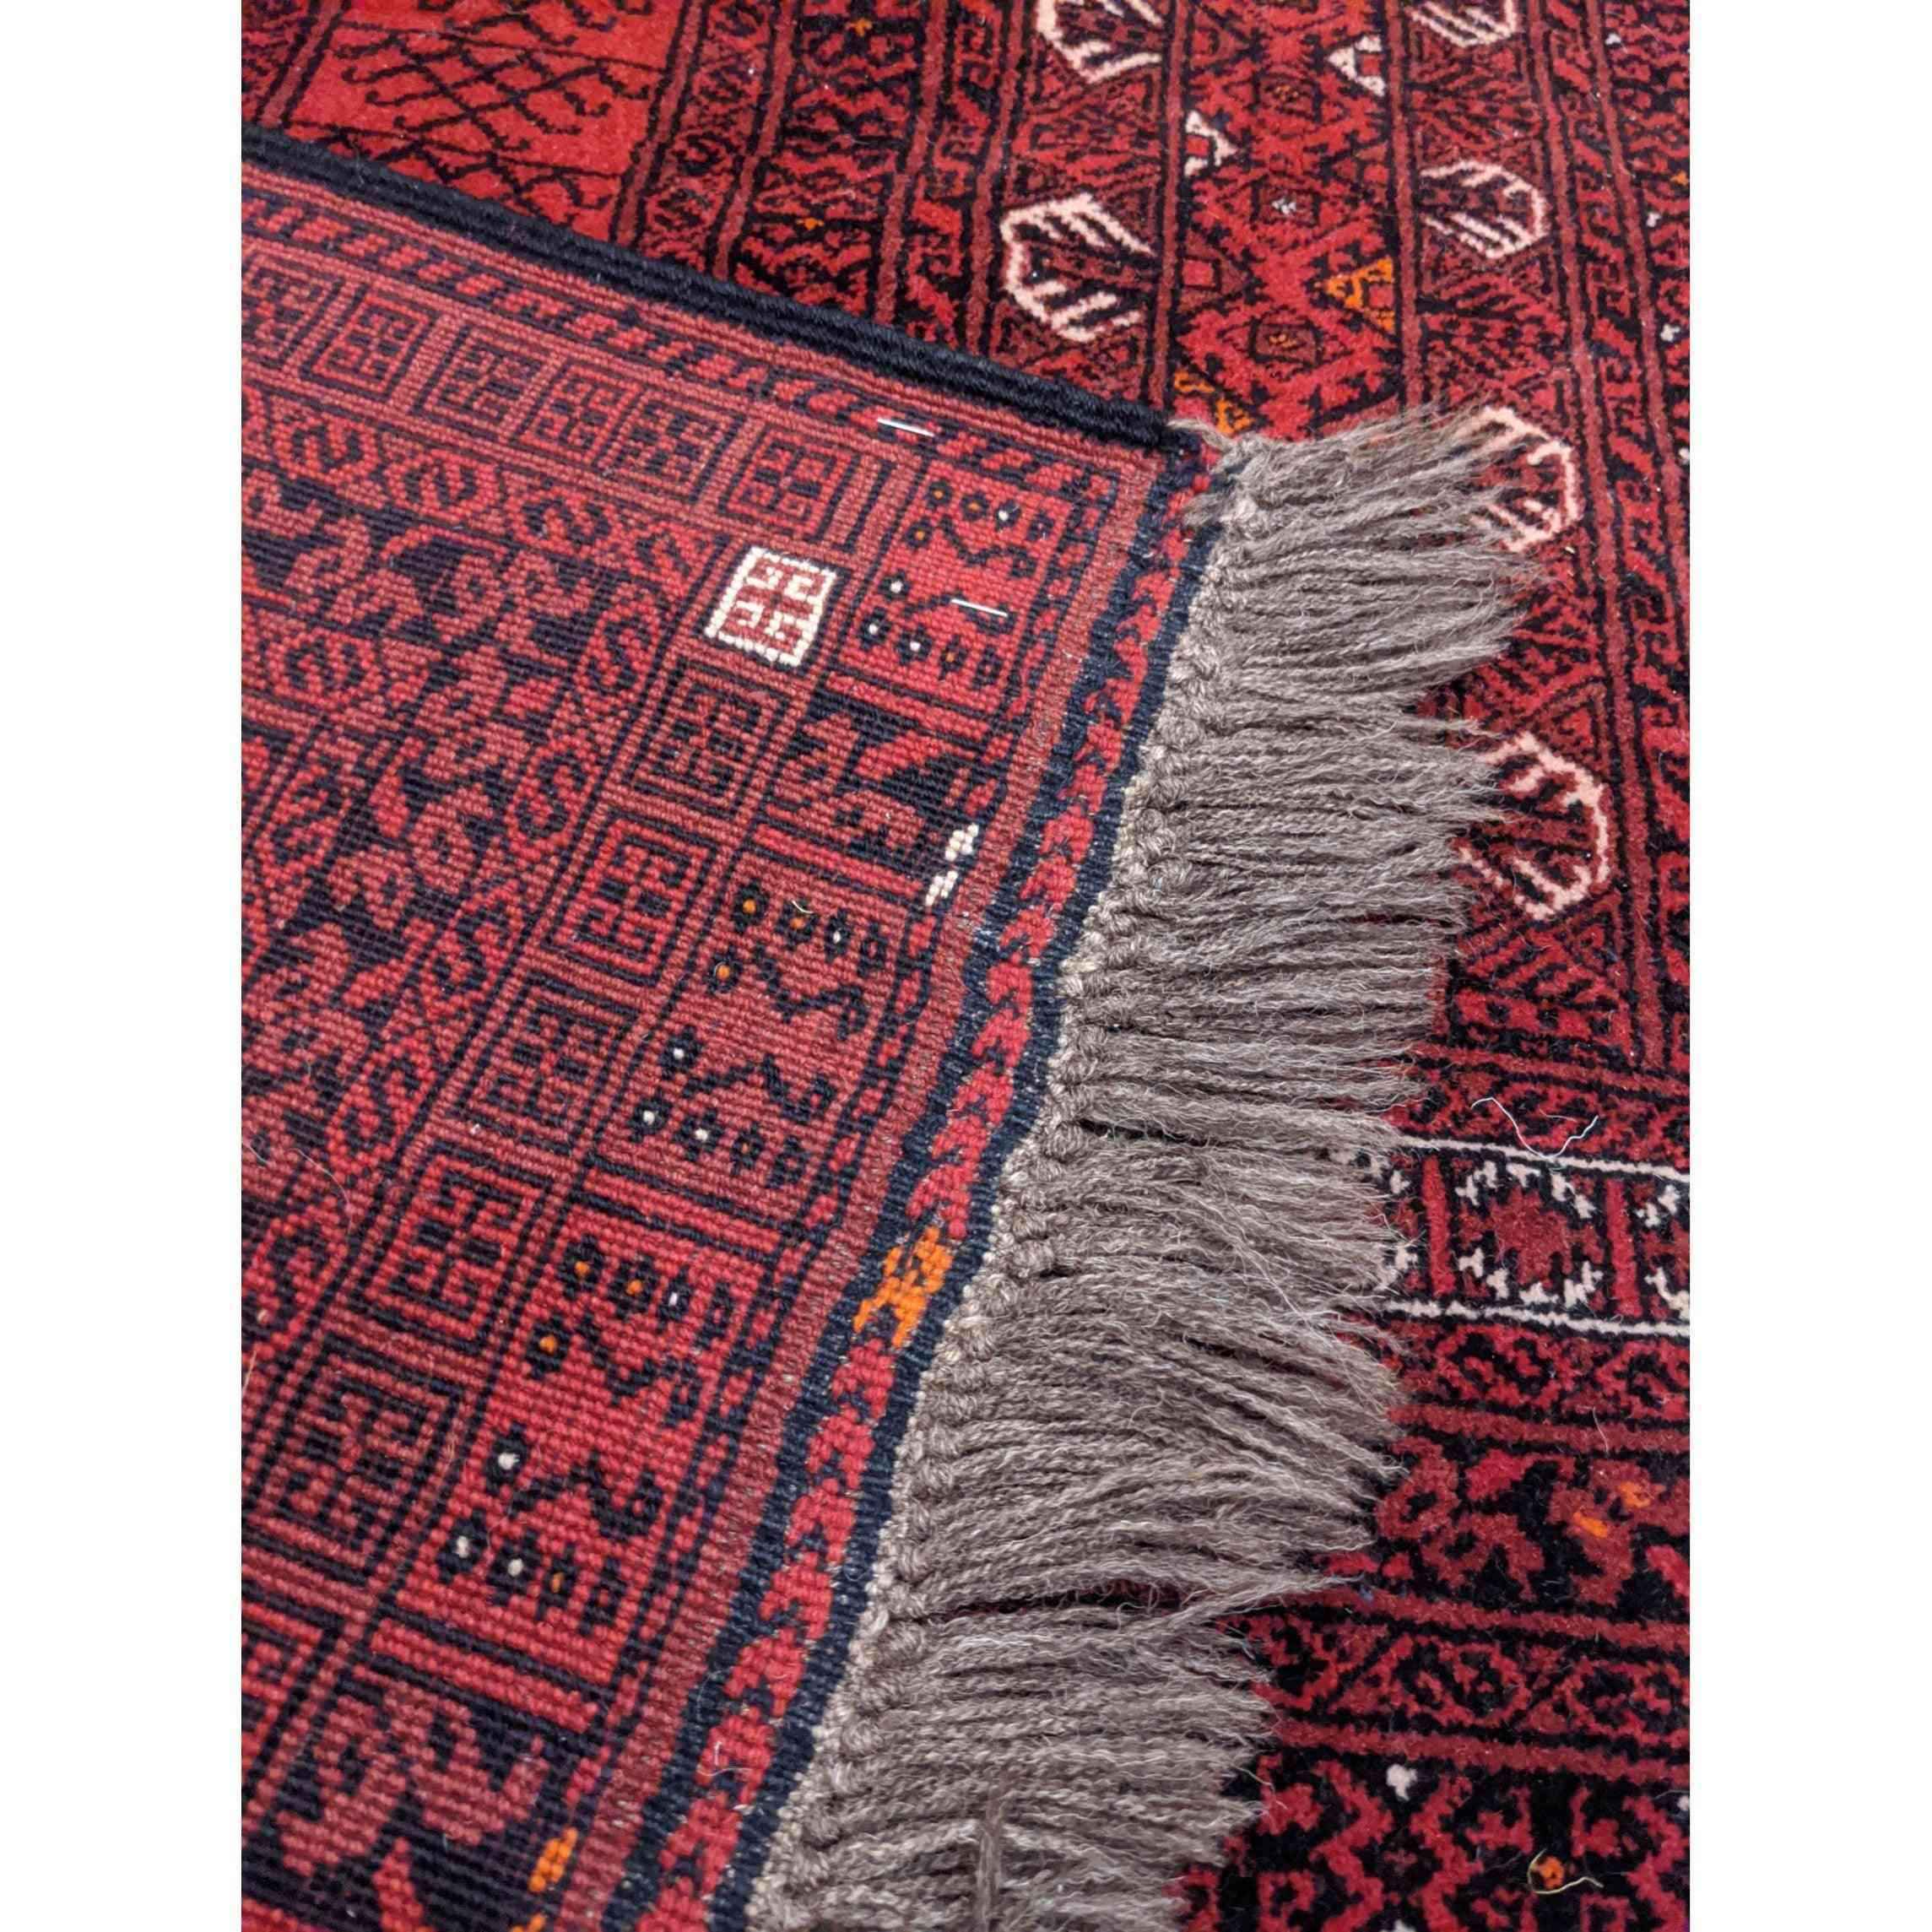 238 x 162 cm Afghan Hachlu Tribal Red Rug - Rugmaster